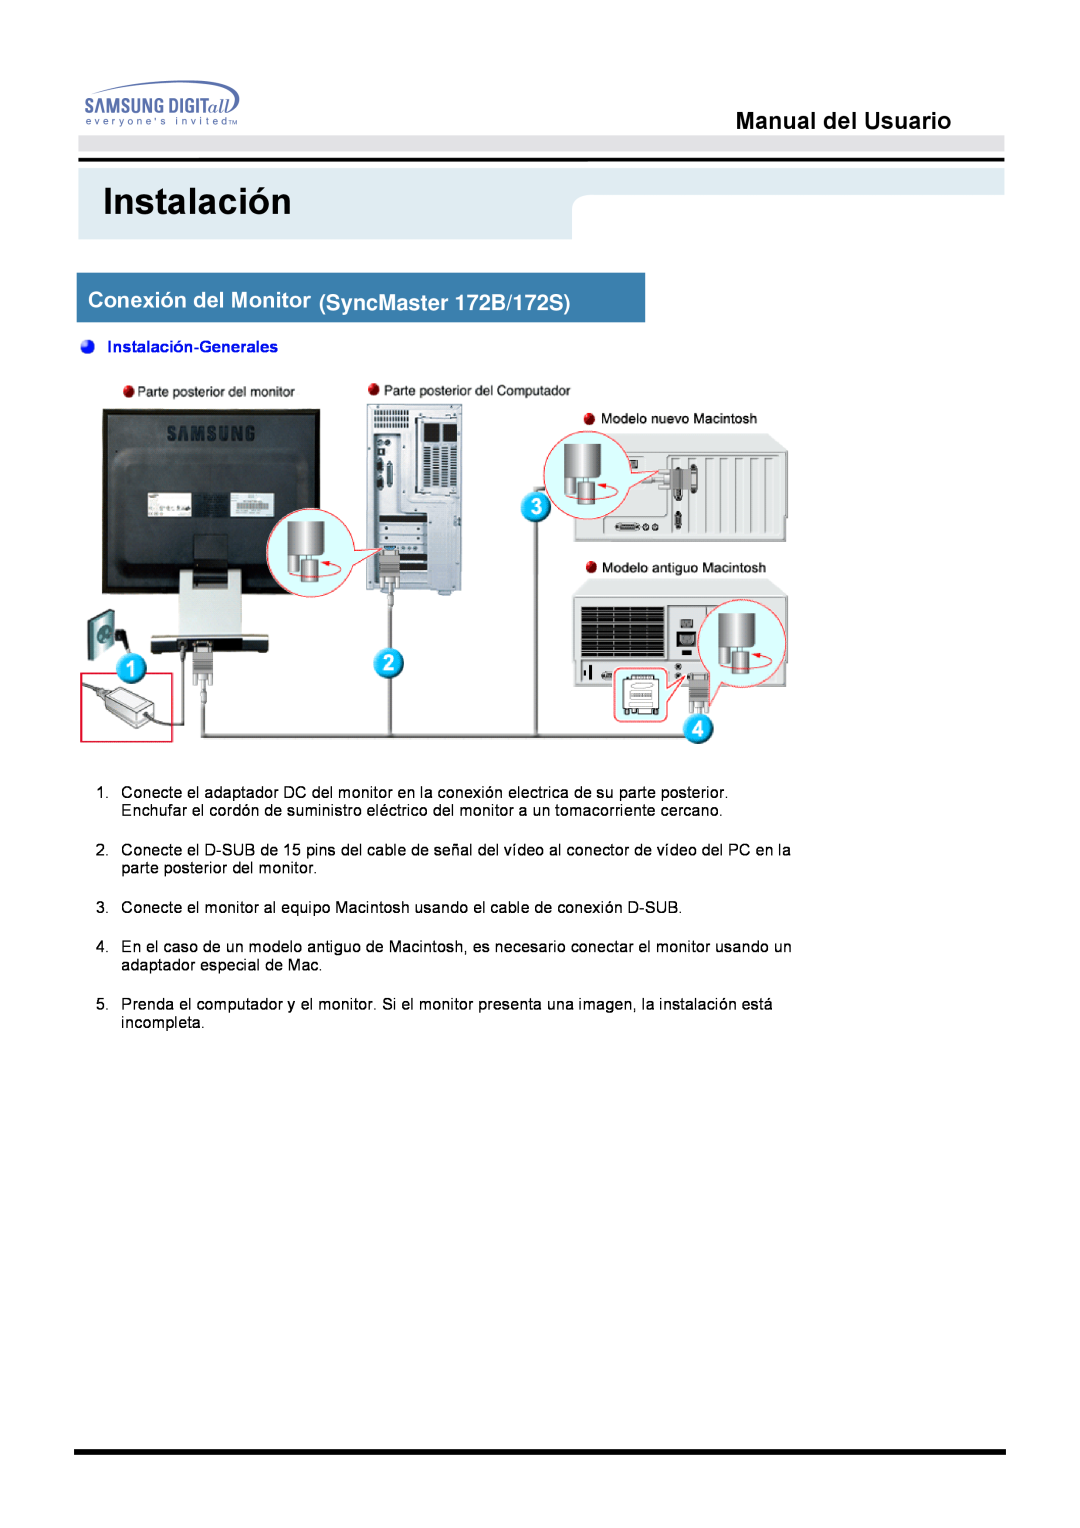 Samsung MO17ESZSZ/EDC manual Conexión del Monitor SyncMaster 172B/172S, Manual del Usuario, Instalación-Generales 